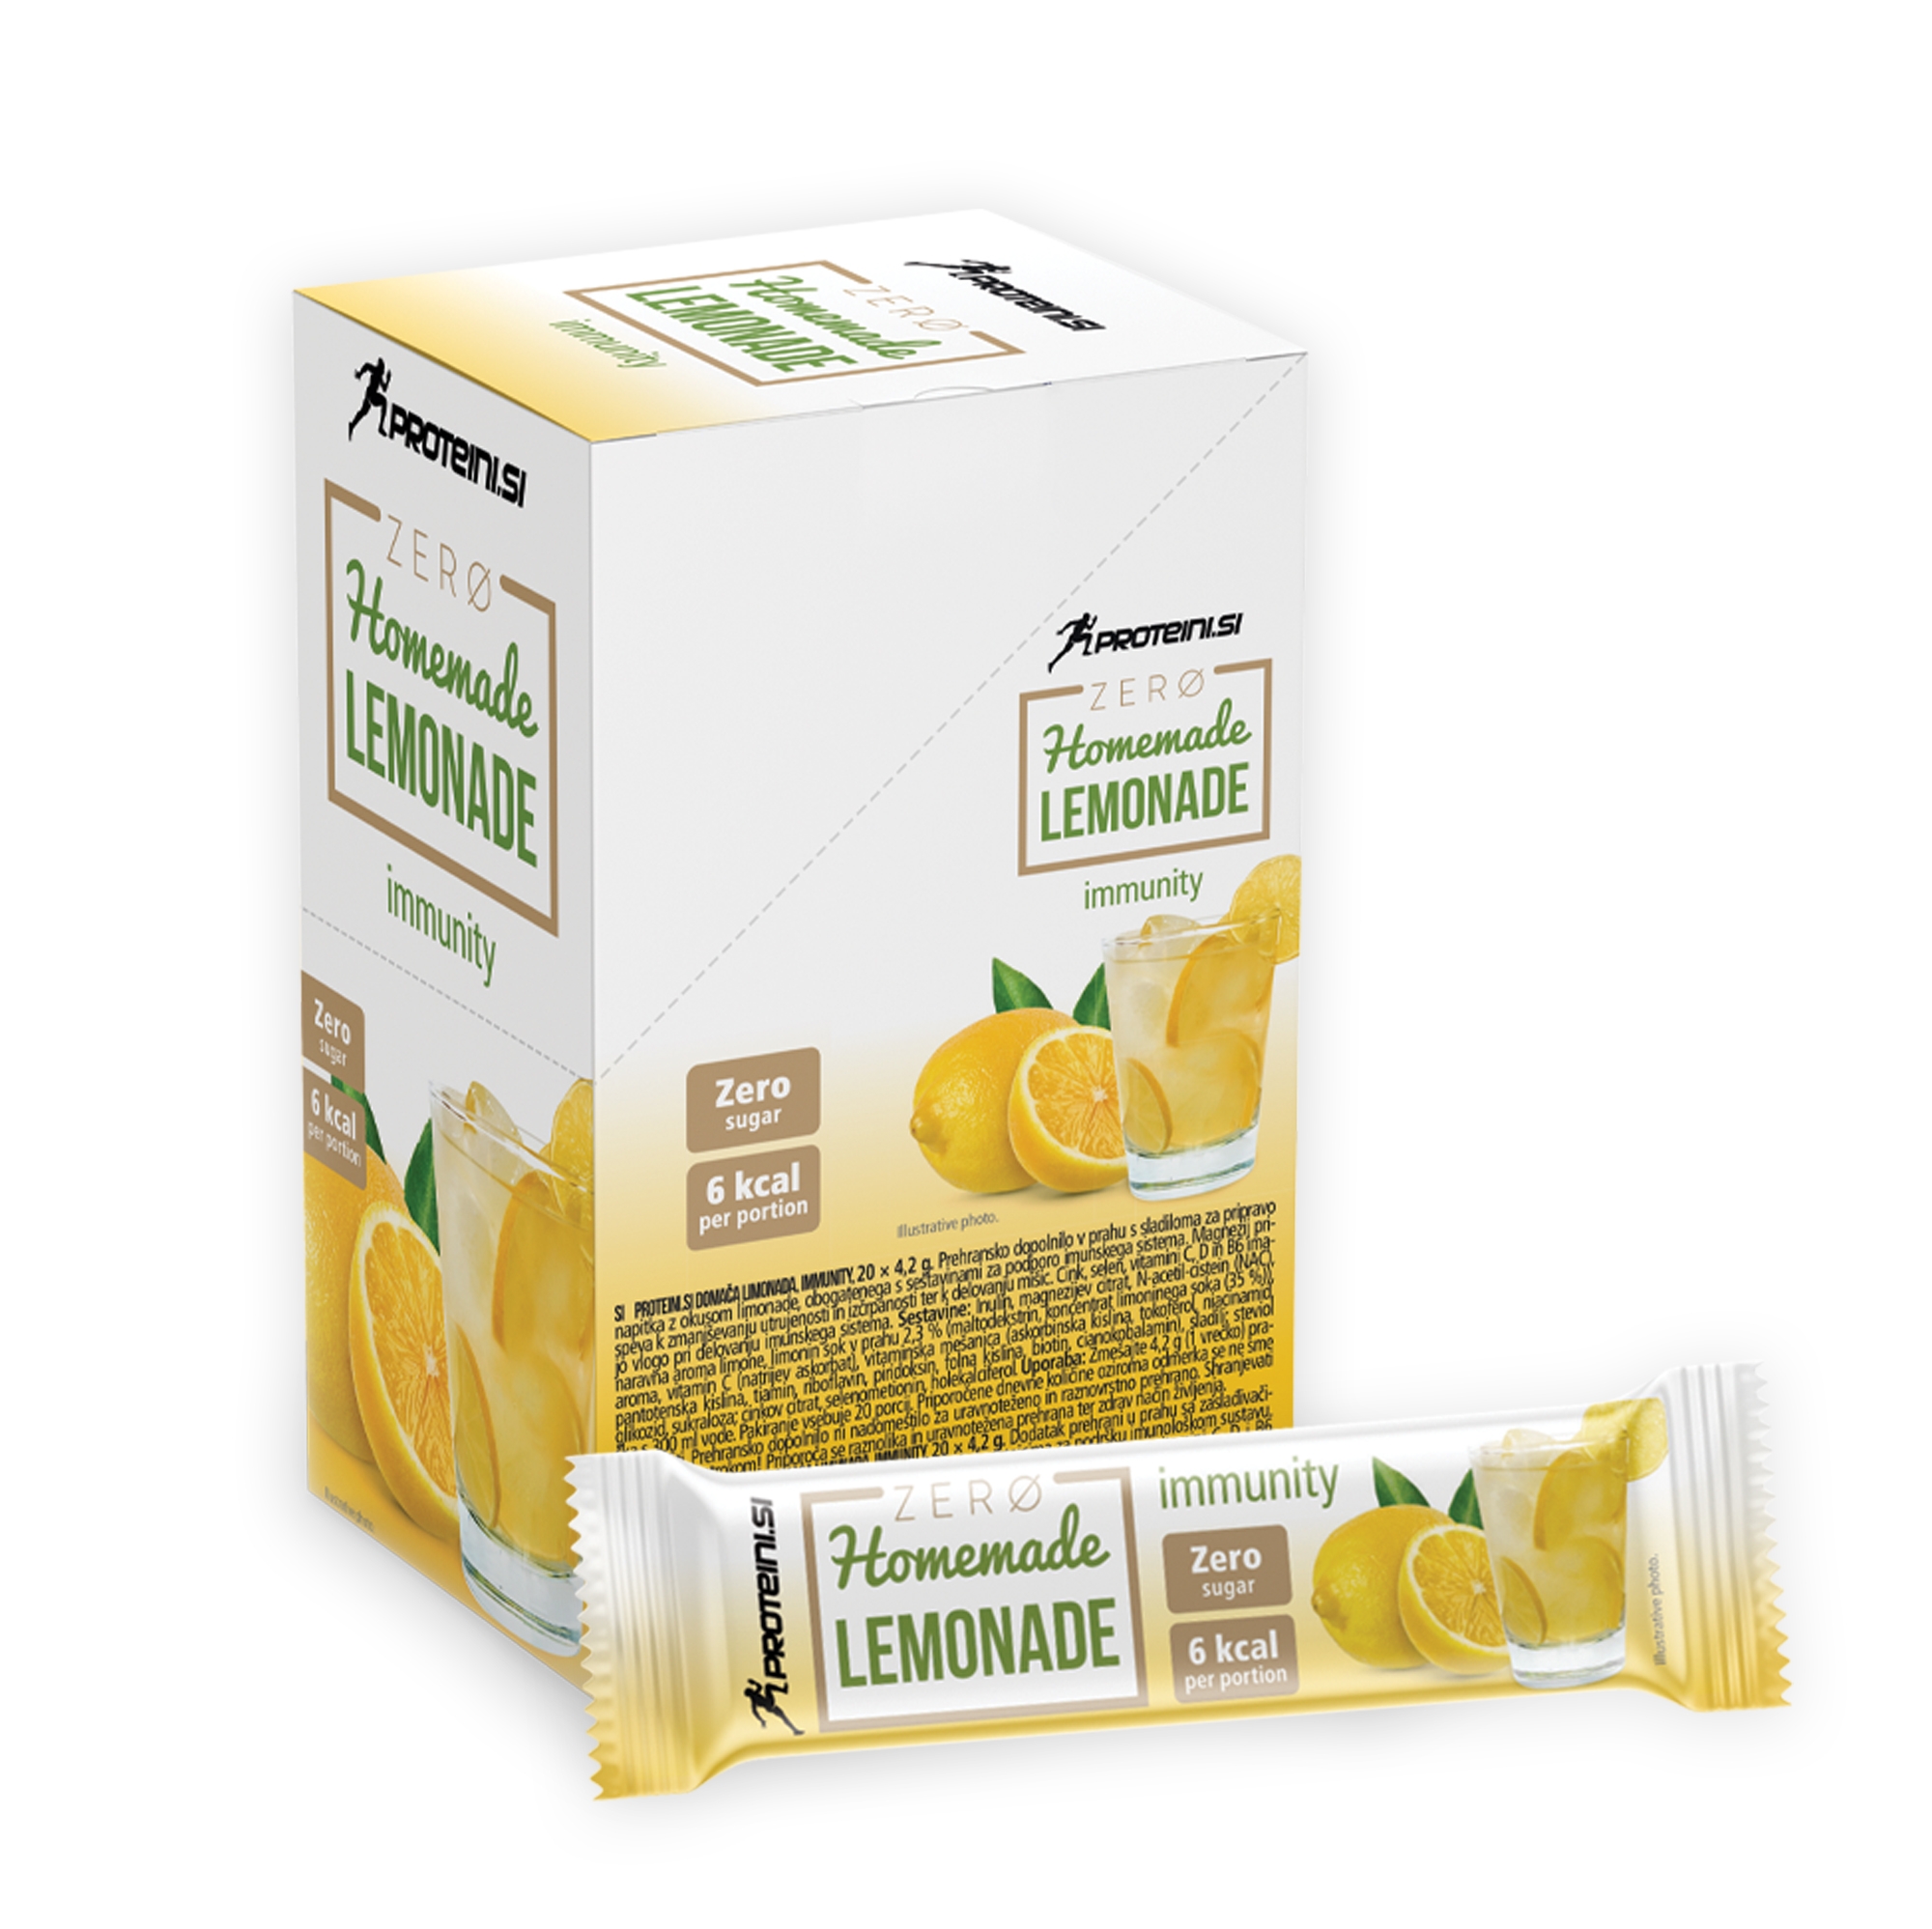 Proteini Zero Homemade Lemonade Immunity 20x4,2g